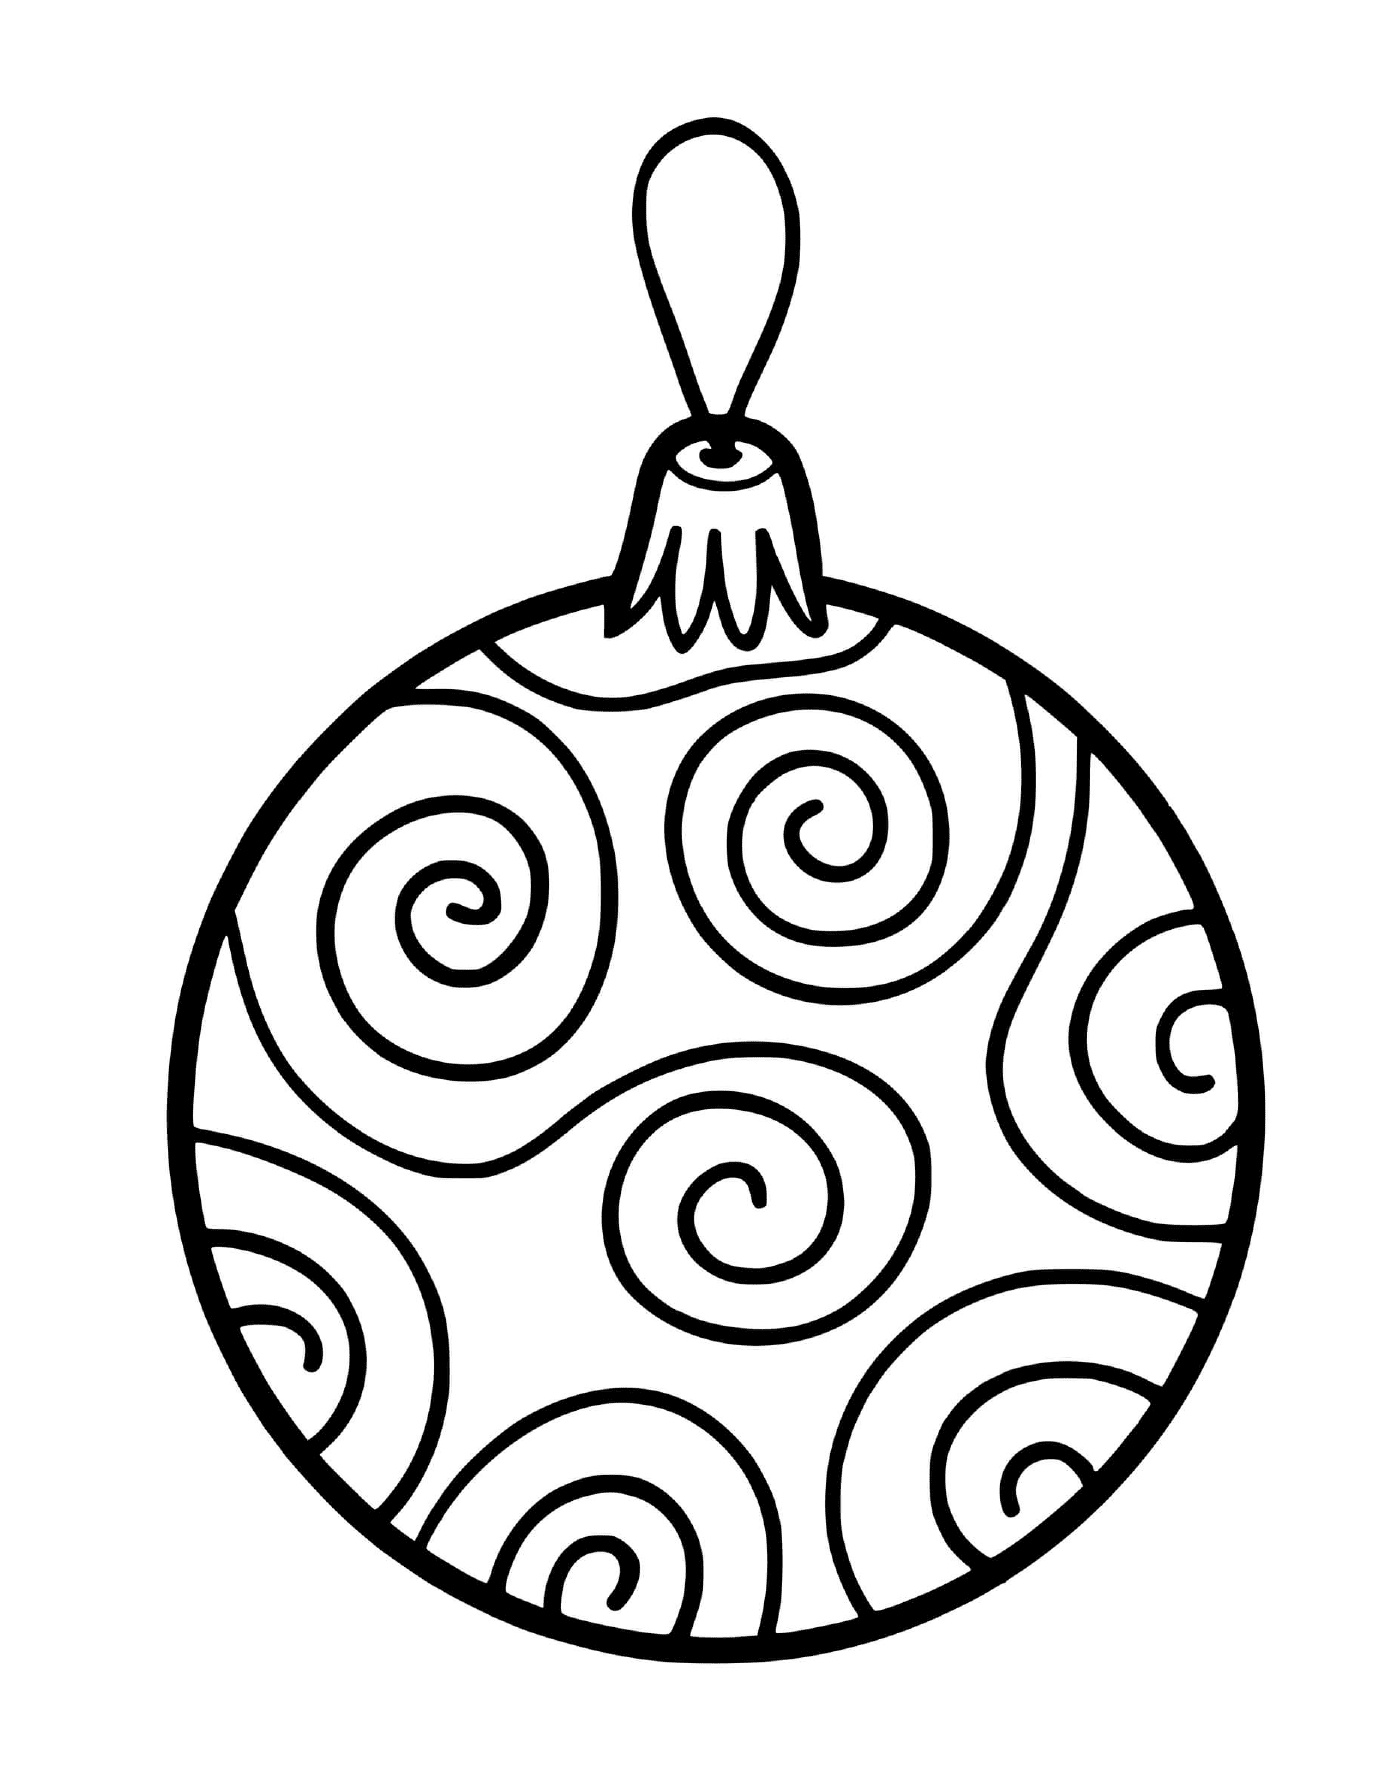  Uma bola de árvore de Natal com ziguezagues 